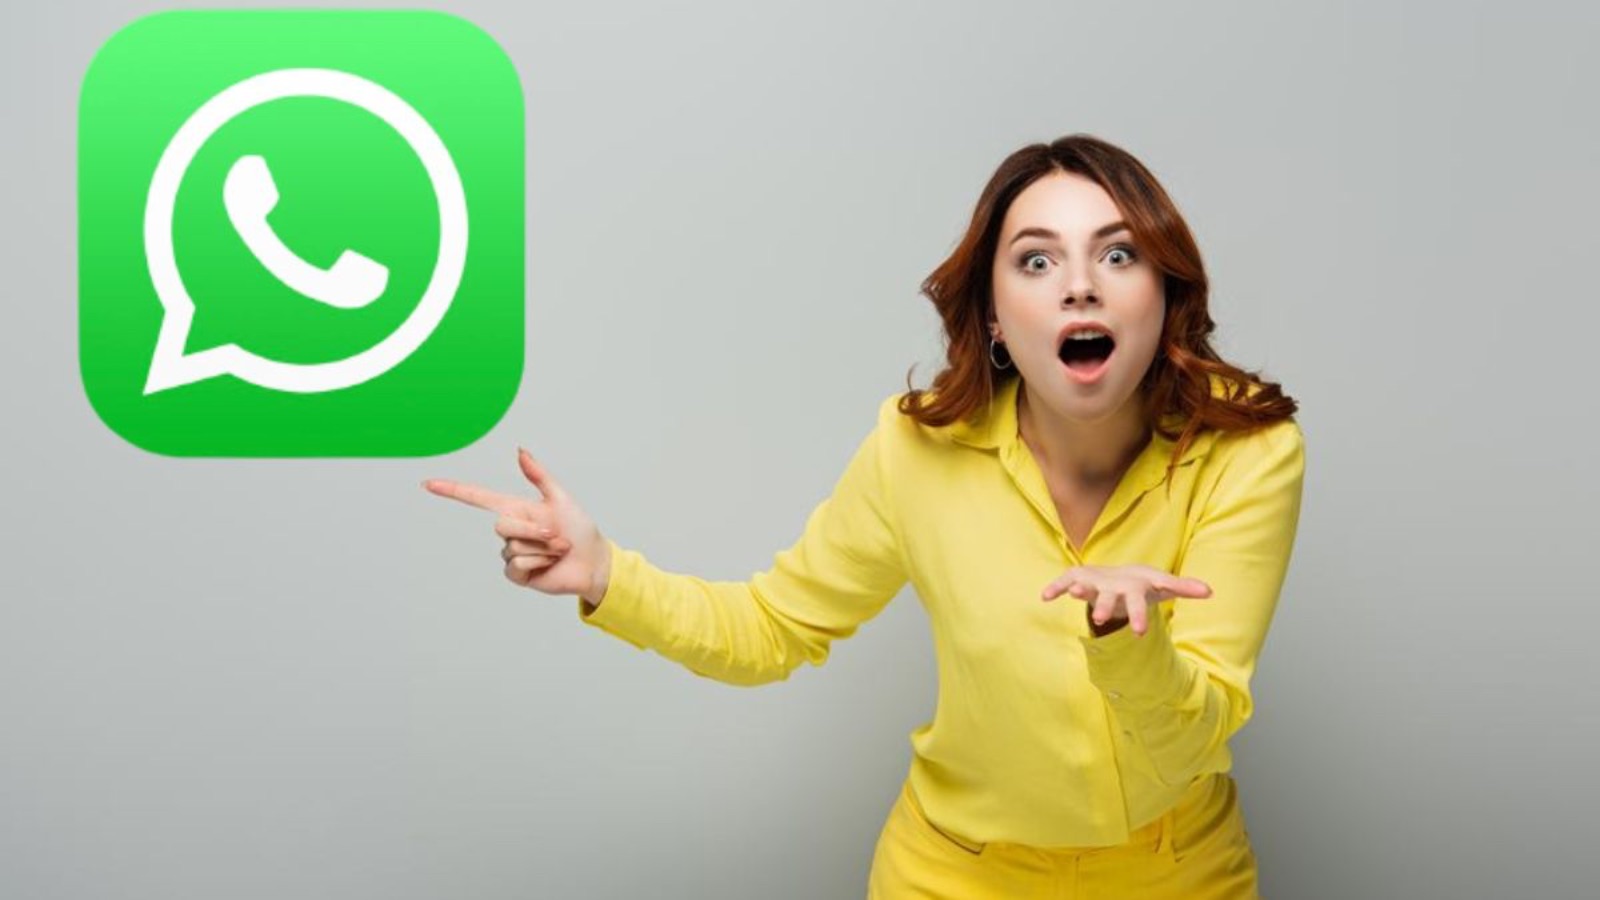 WhatsApp, scegli ora le TRE funzioni segrete e utilissime GRATIS